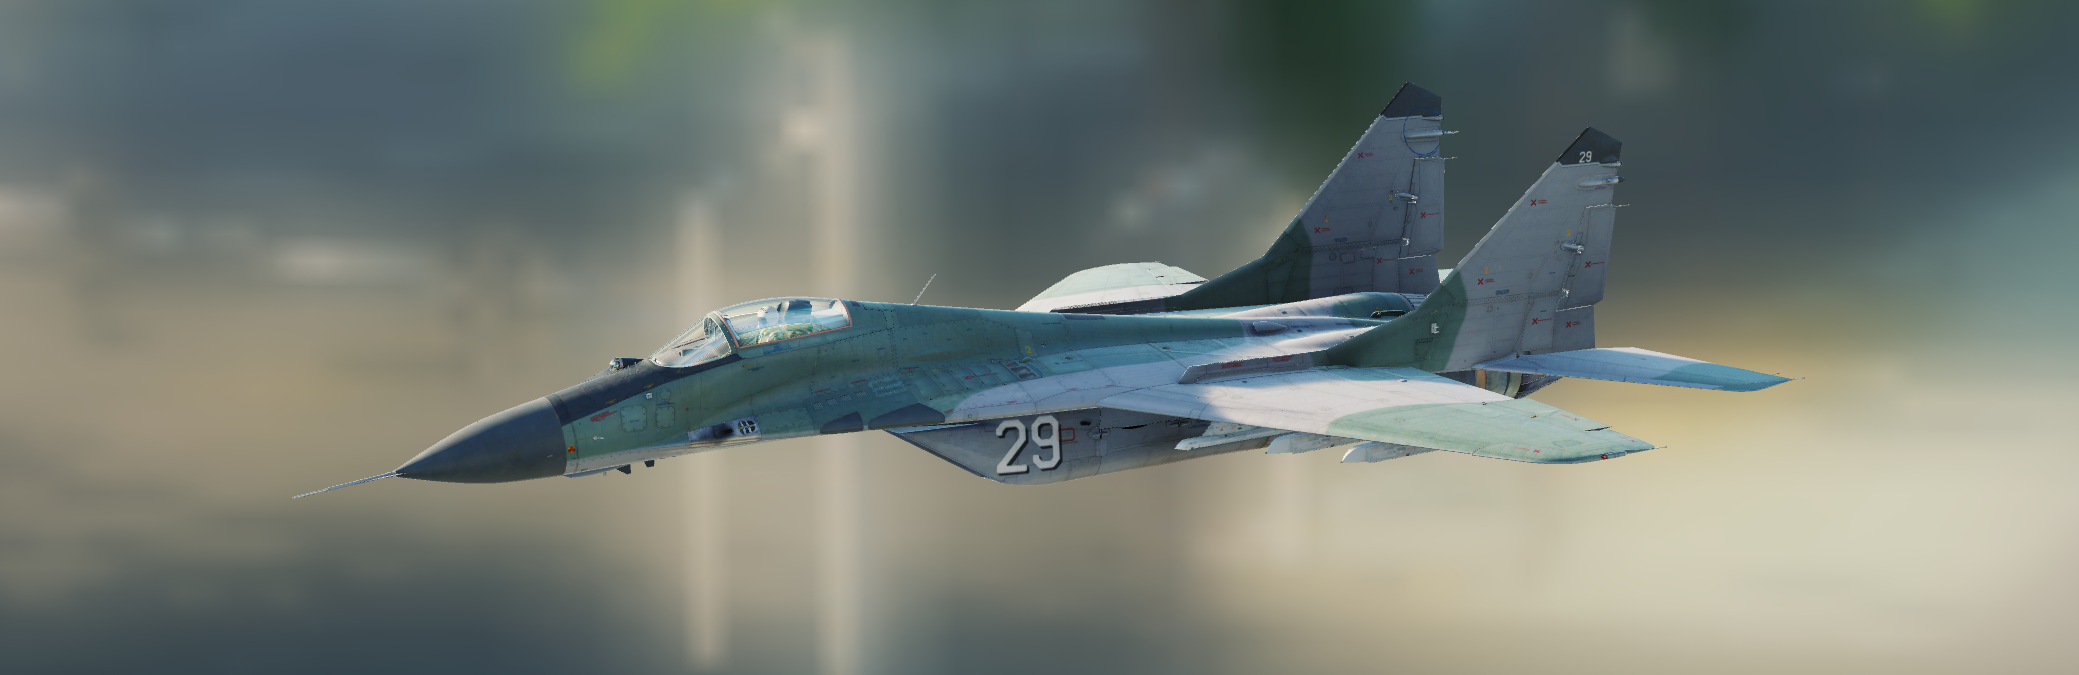 Unmarked liveries for MiG-29A. Su-27, Su-25